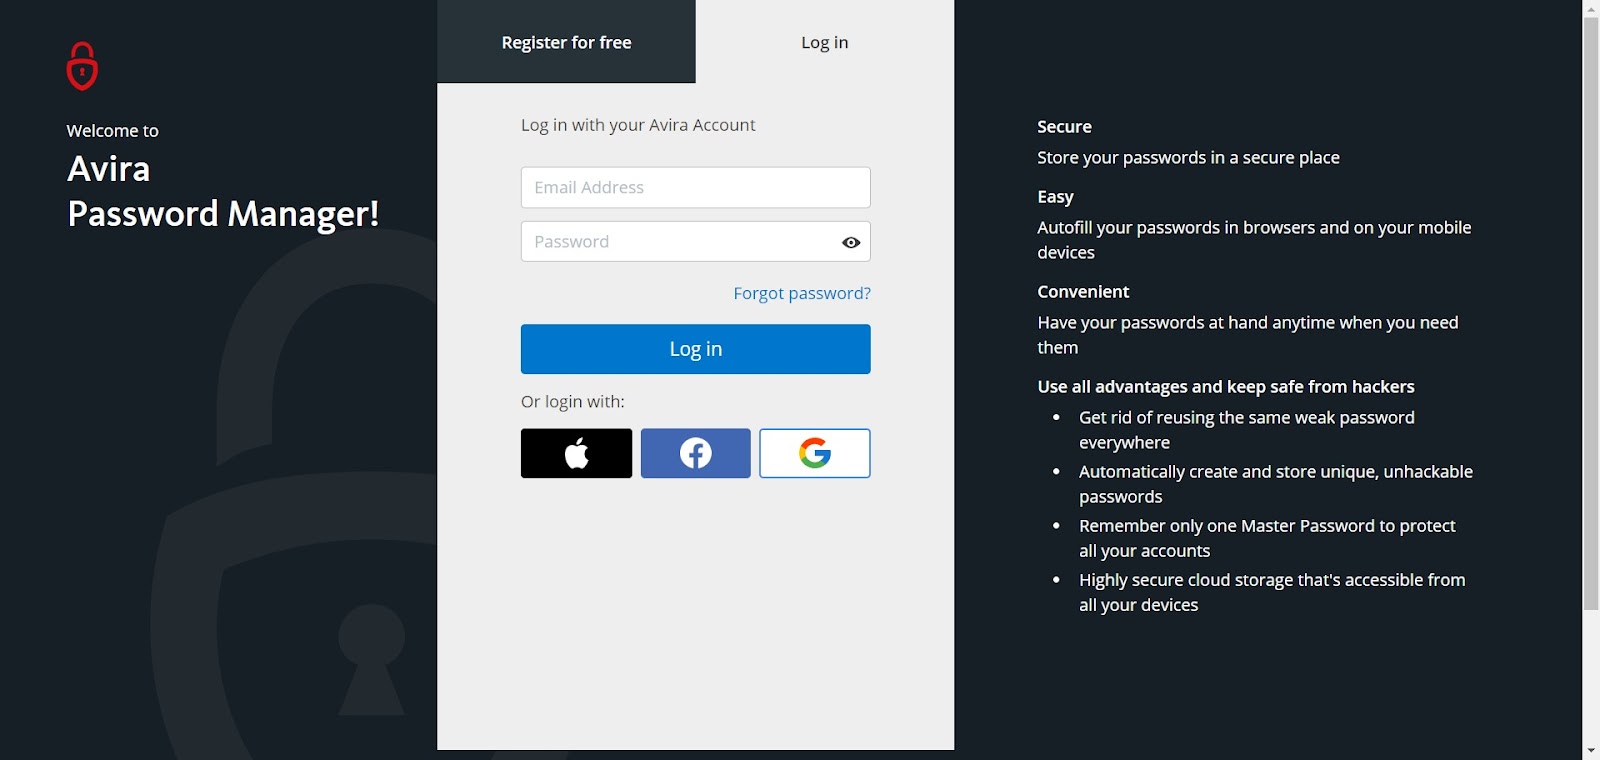 A screenshot of Avira Password Manager's website